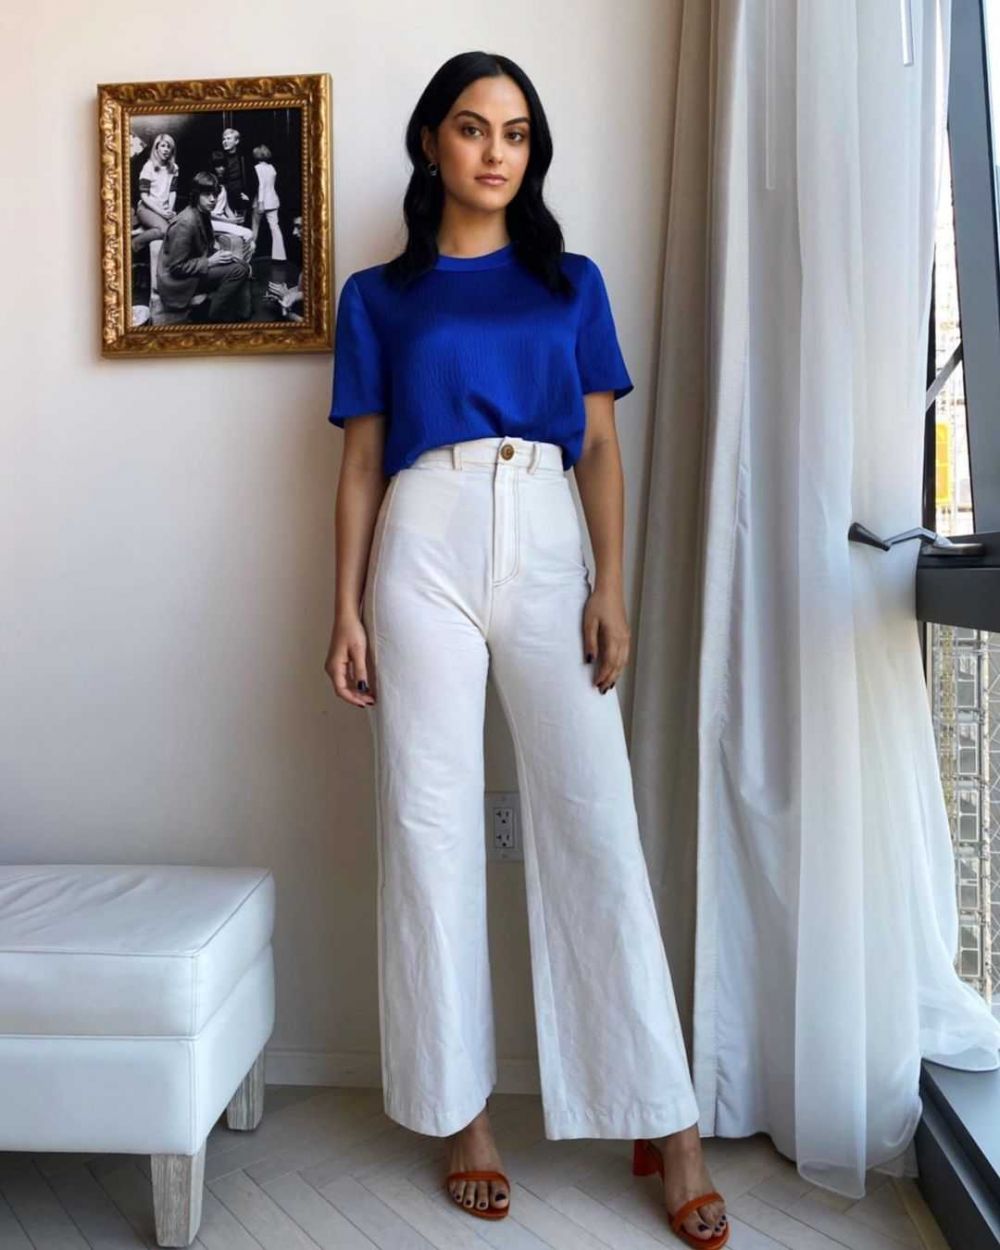 10 Ide Outfit Camila Mendes, Gaya Kasual Hingga Elegan yang Stunning